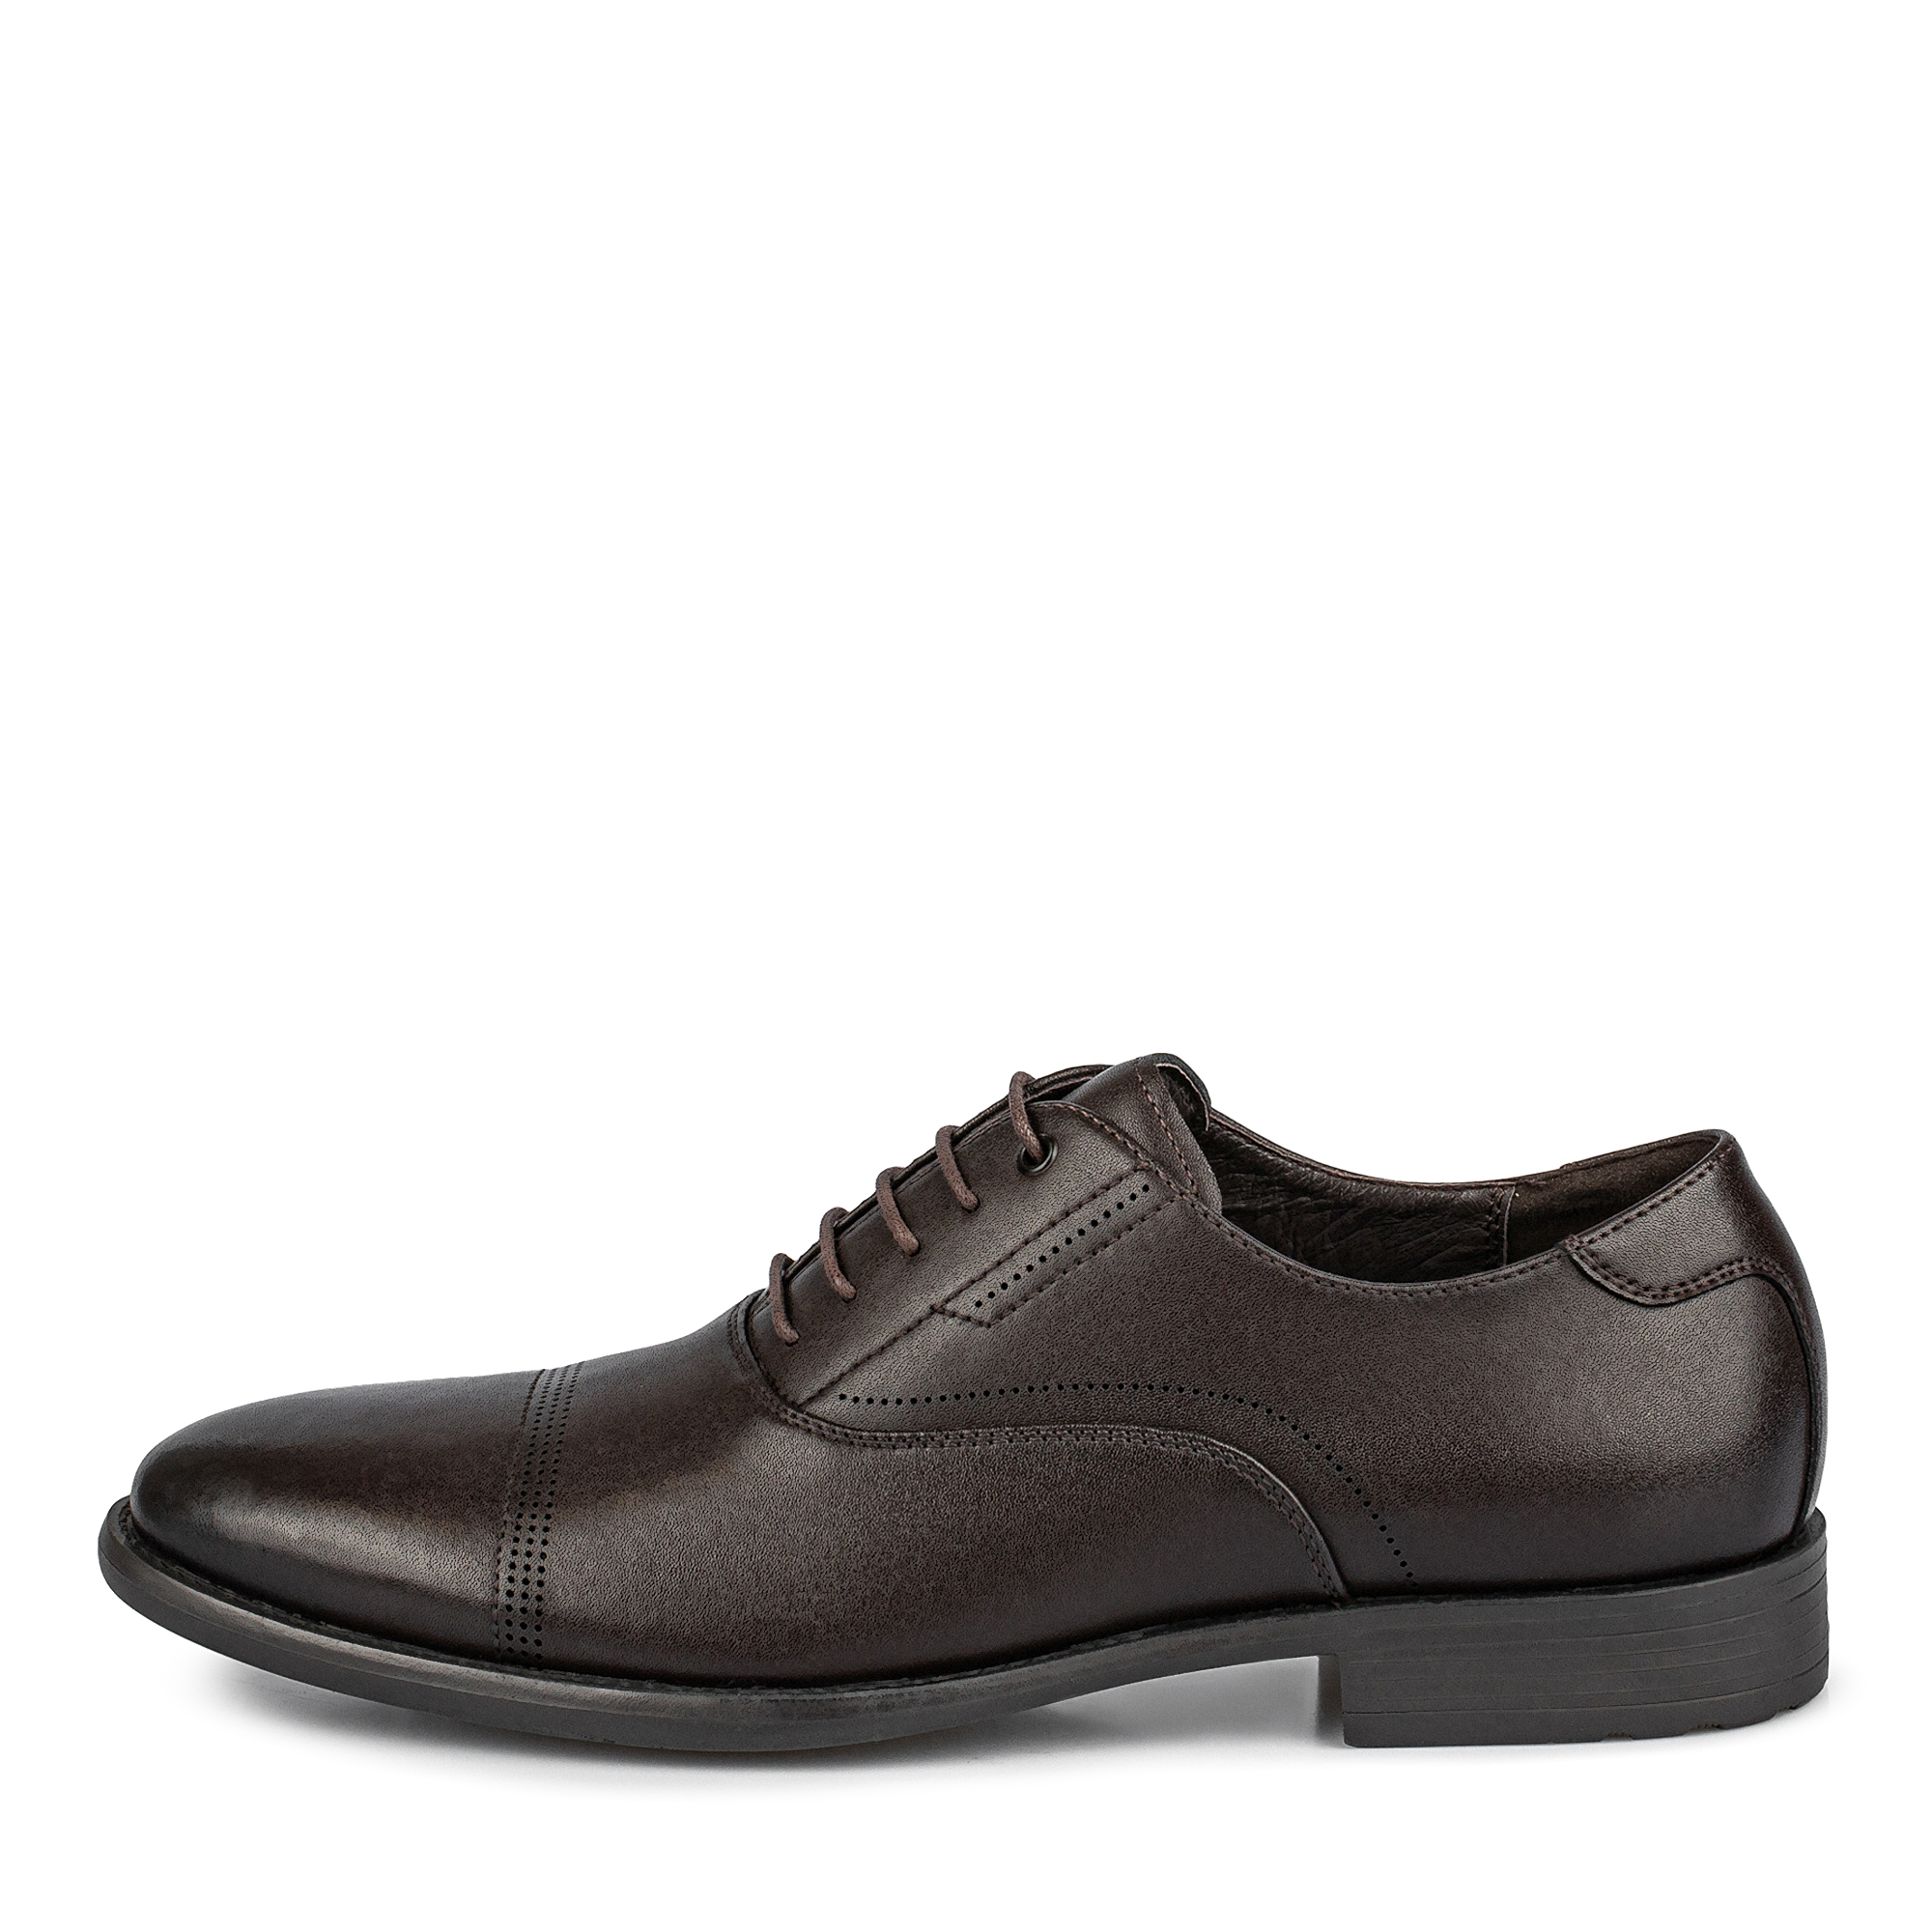 Туфли/полуботинки Thomas Munz 104-642A-1609, цвет коричневый, размер 41